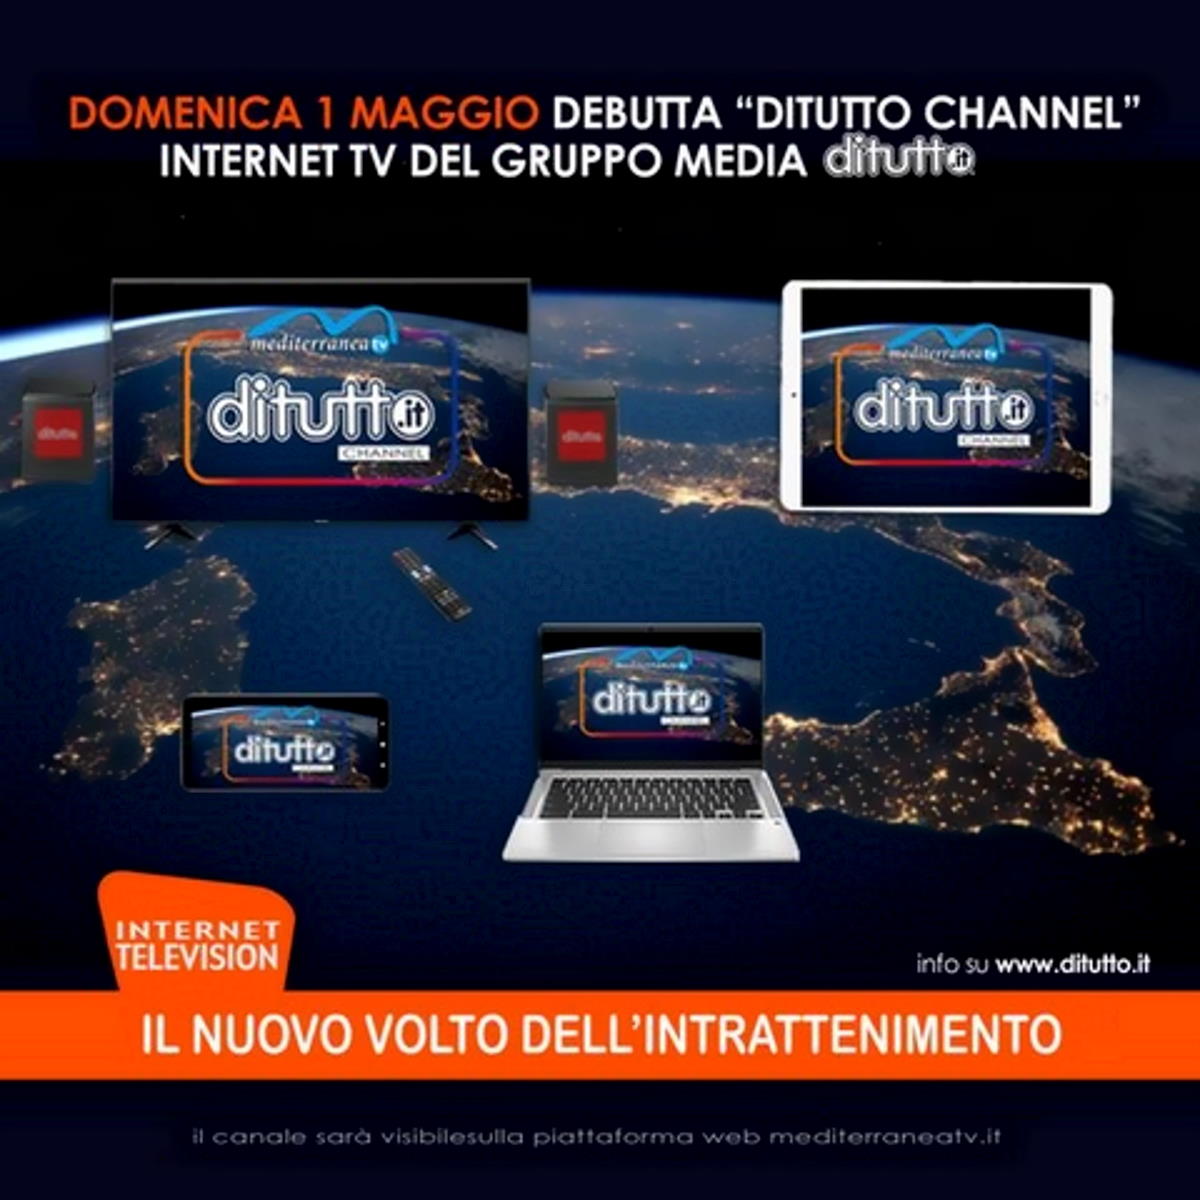 Debutta “Ditutto Channel” originale internet television dedicata all’intrattenimento. Dal 1 maggio il canale sarà visibile gratuitamente sulla piattaforma mediterraneatv.it